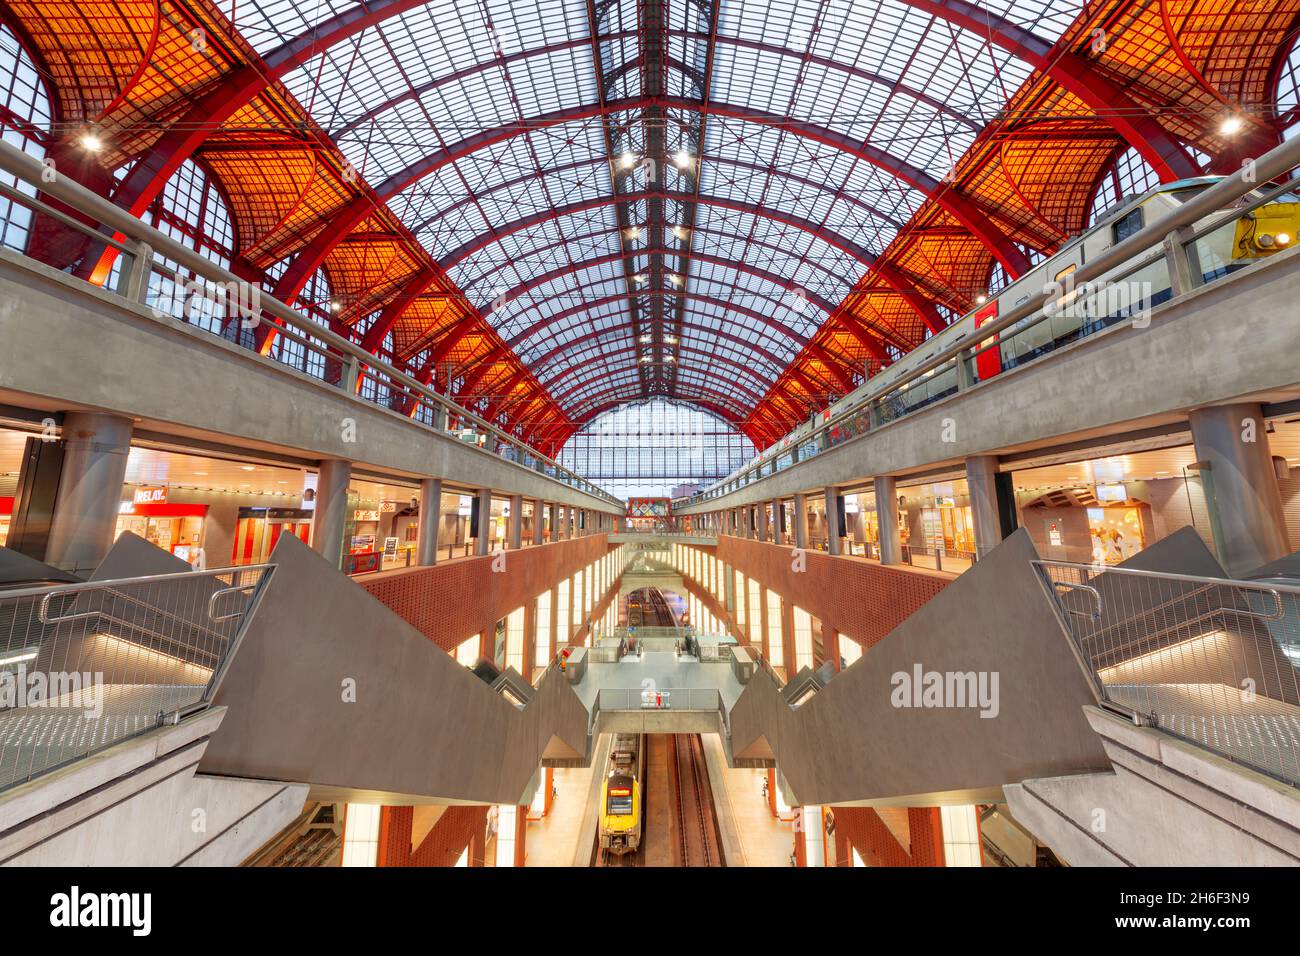 ANVERSA, BELGIO - 5 MARZO 2020: La principale sala della stazione ferroviaria di Anversa-Centraal, risalente al 1905. Foto Stock